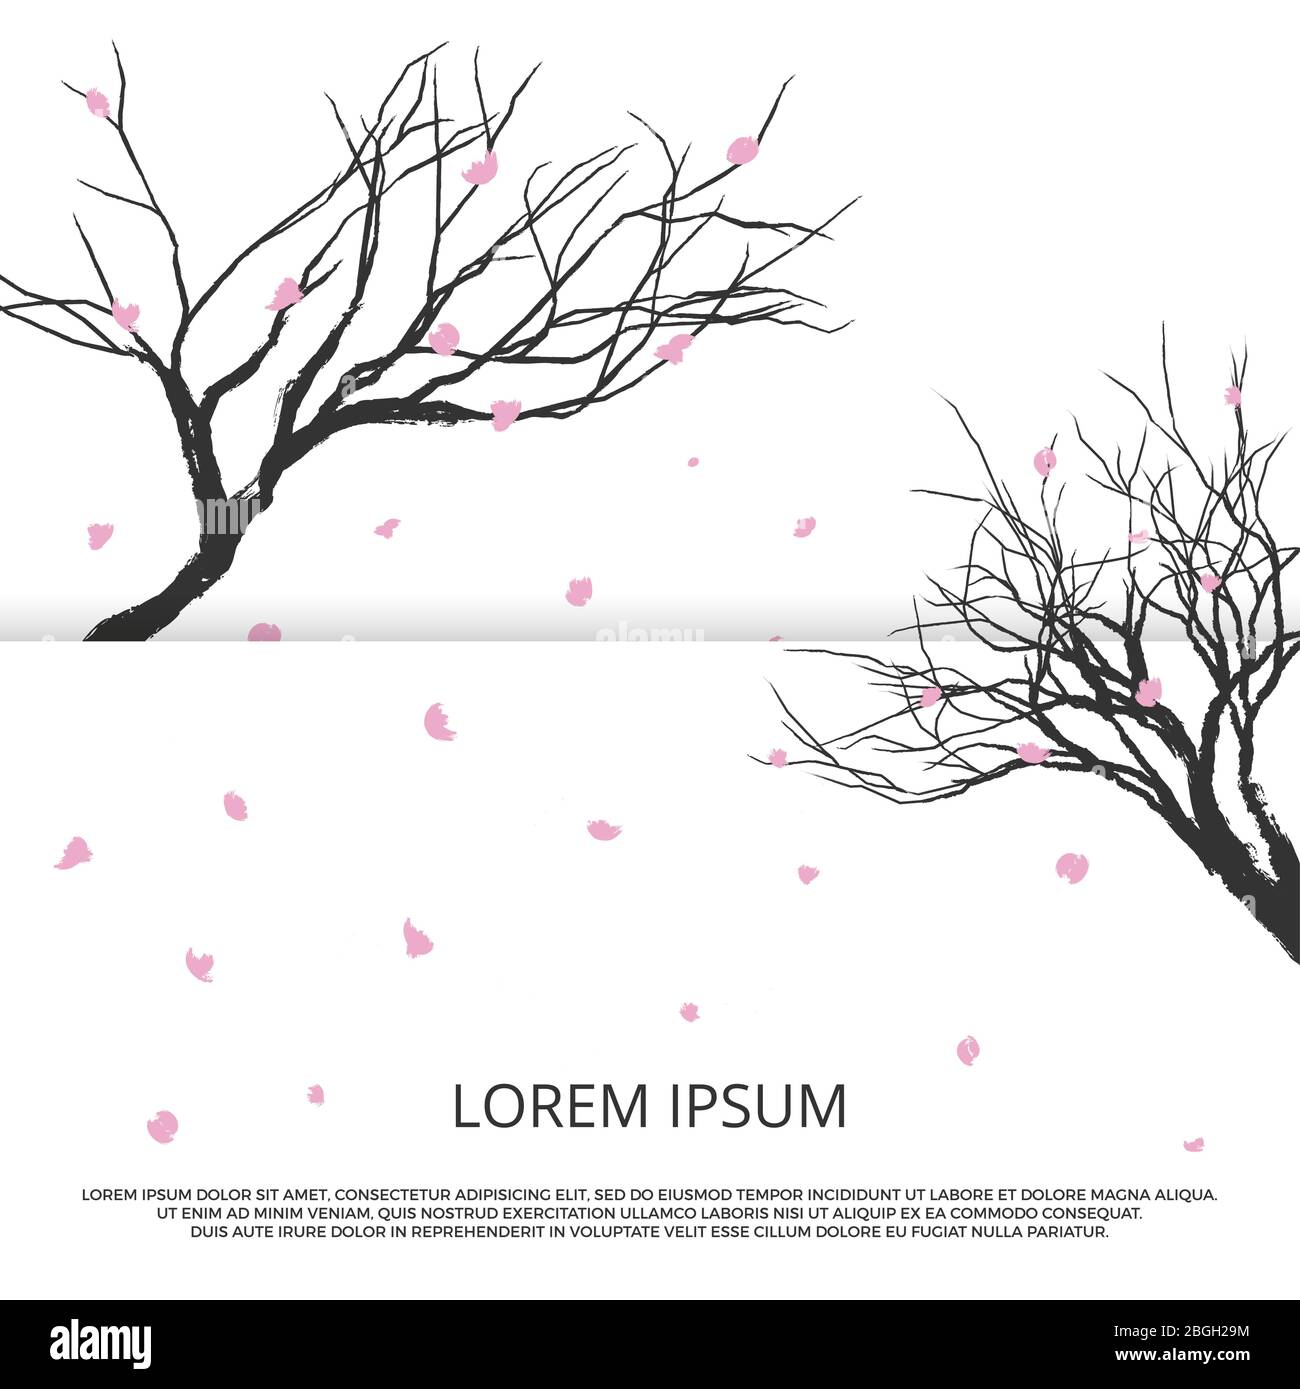 Silhouette de Grunge sakura et feuilles roses volantes. Illustration romantique du modèle de bannière vectorielle japonaise Illustration de Vecteur